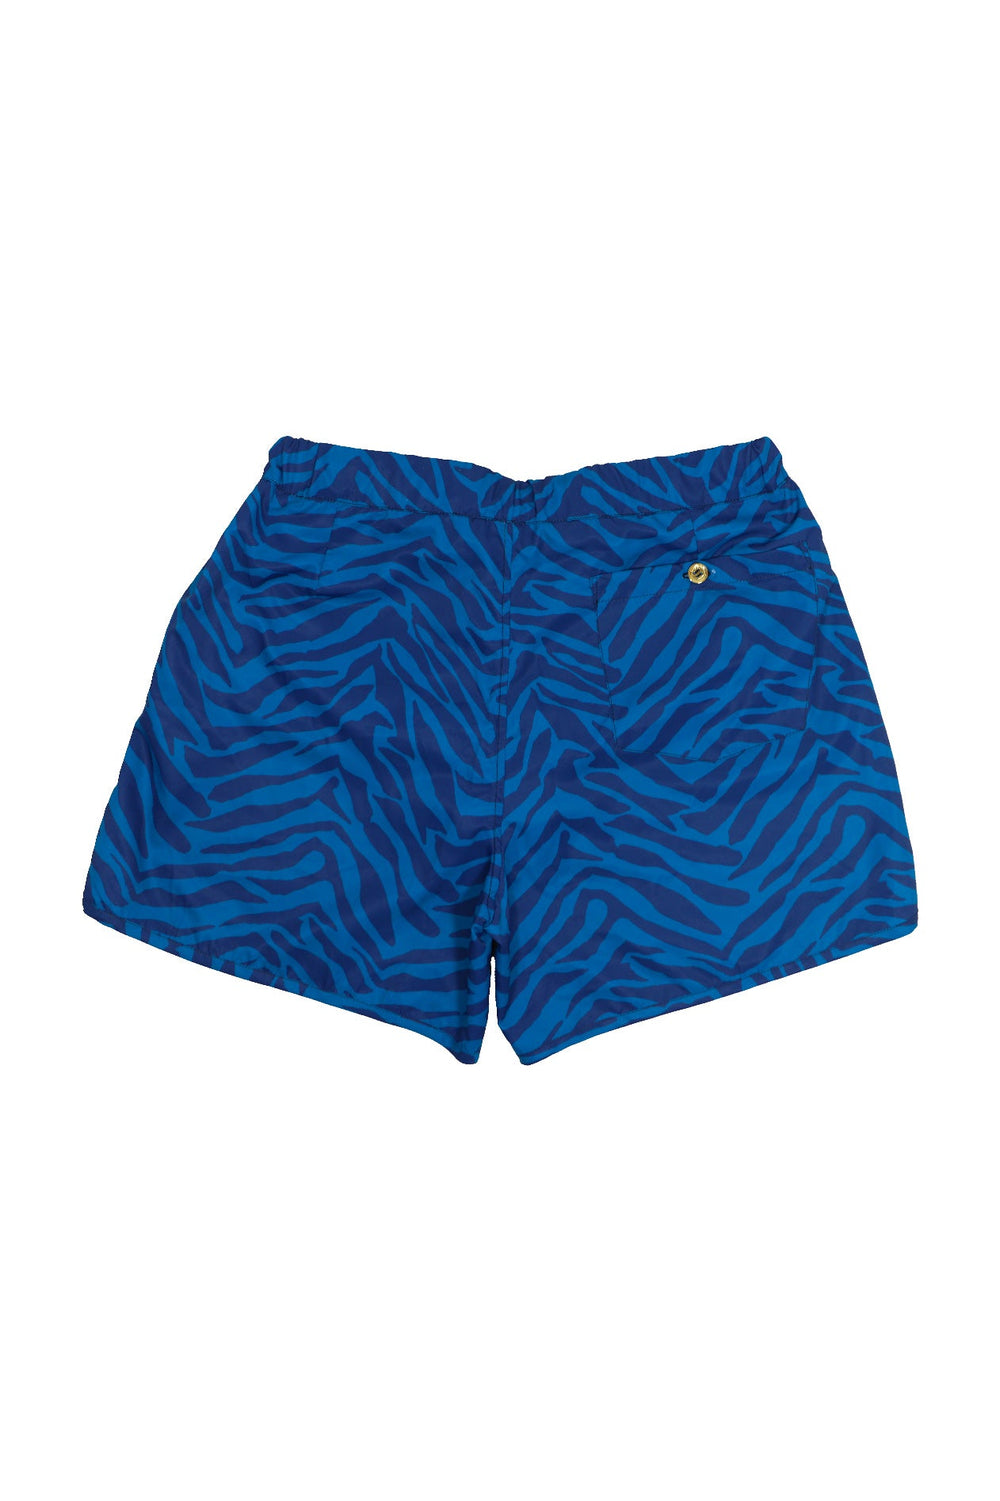 Blue zebra print shorts